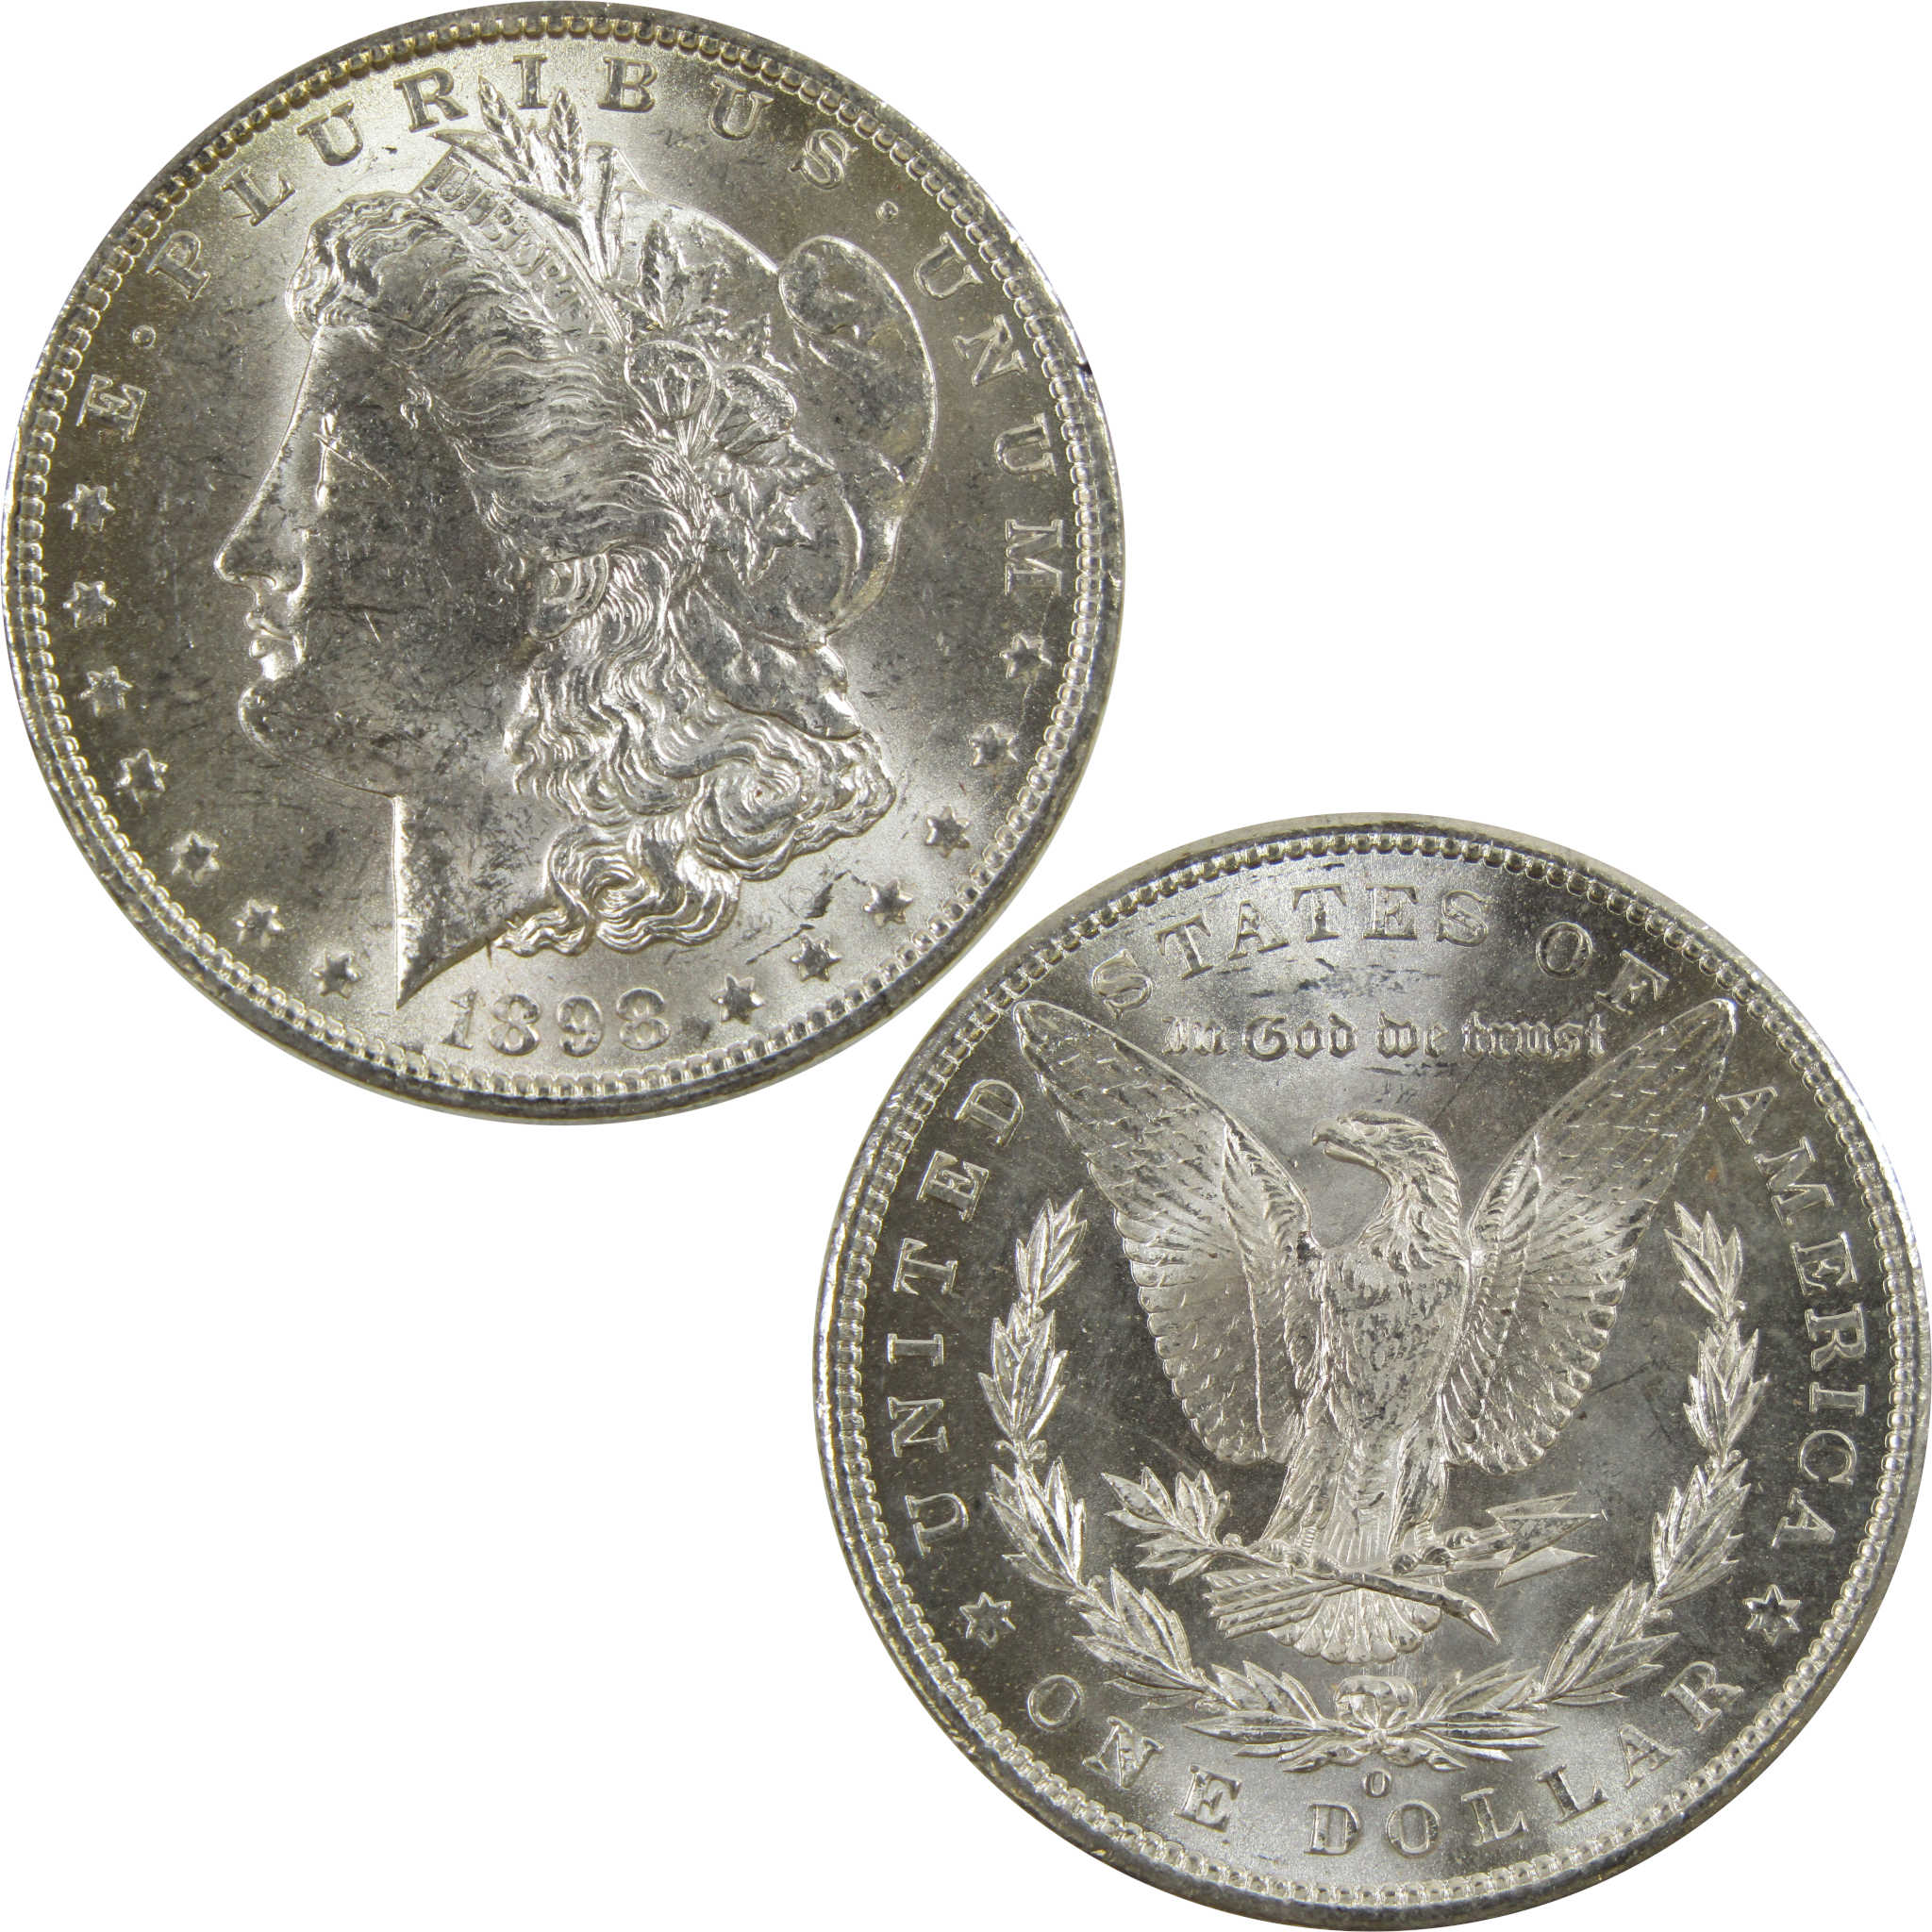 1898 O Morgan Dollar BU Uncirculated 90% Silver $1 Coin SKU:I5215 - Morgan coin - Morgan silver dollar - Morgan silver dollar for sale - Profile Coins &amp; Collectibles